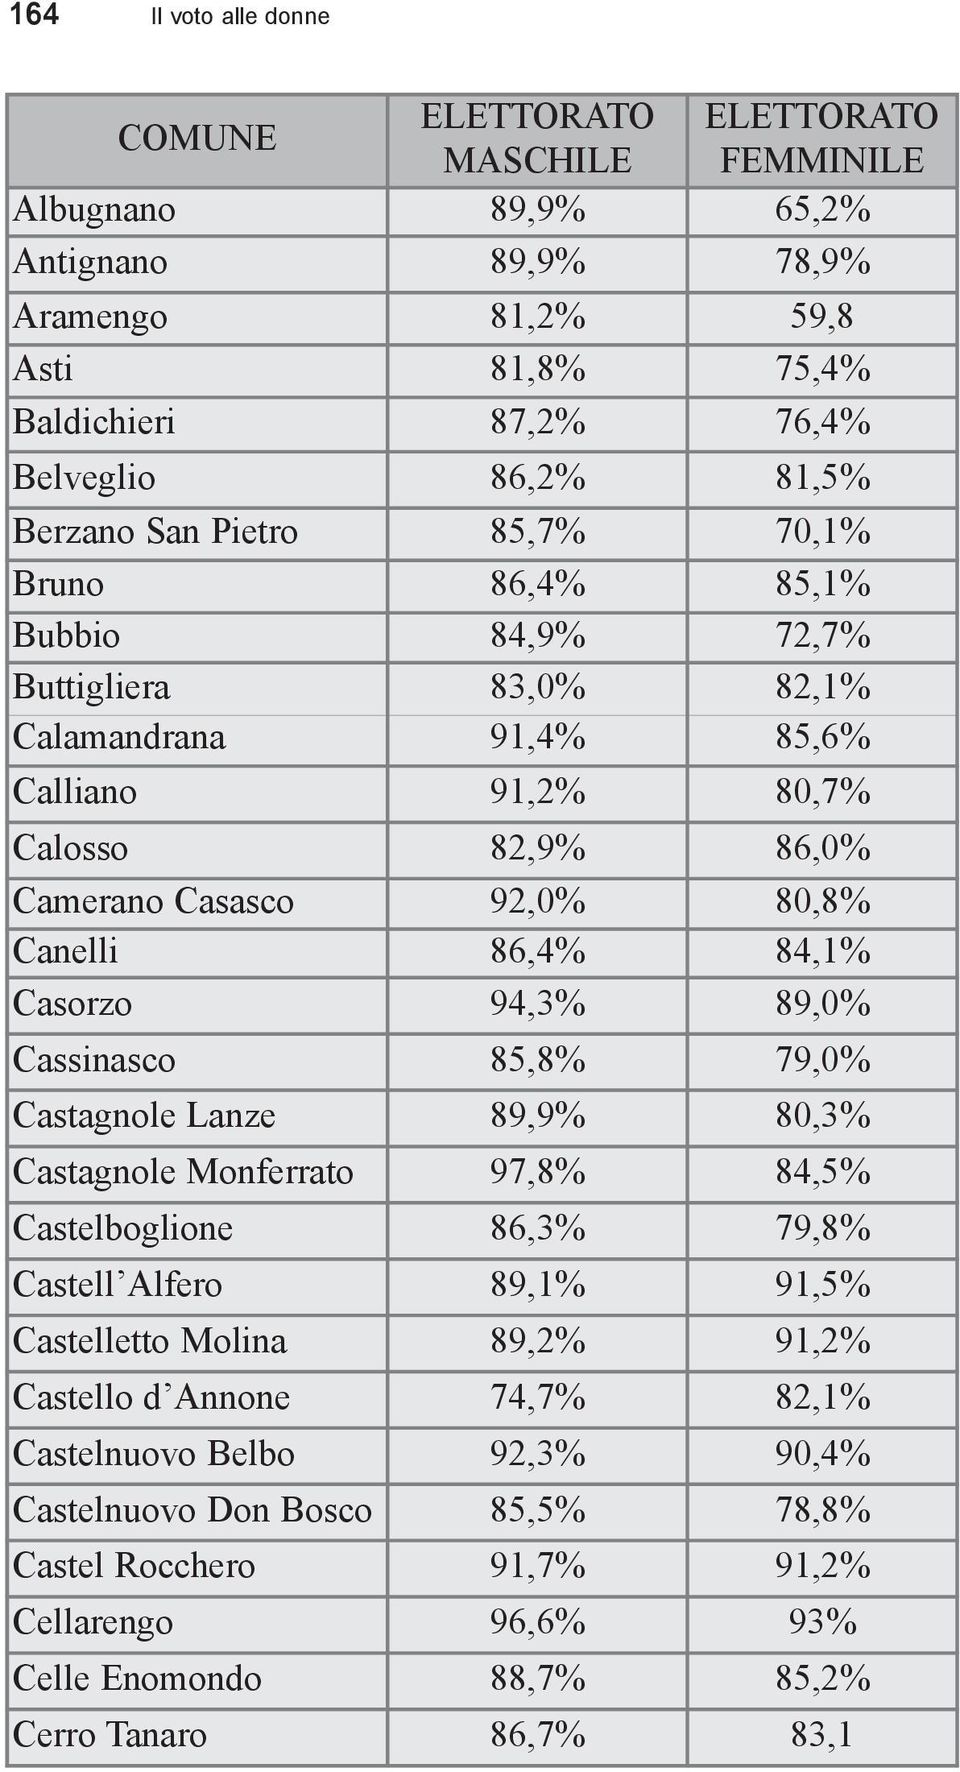 86,4% 84,1% Casorzo 94,3% 89,0% Cassinasco 85,8% 79,0% Castagnole Lanze 89,9% 80,3% Castagnole Monferrato 97,8% 84,5% Castelboglione 86,3% 79,8% Castell Alfero 89,1% 91,5% Castelletto Molina 89,2%